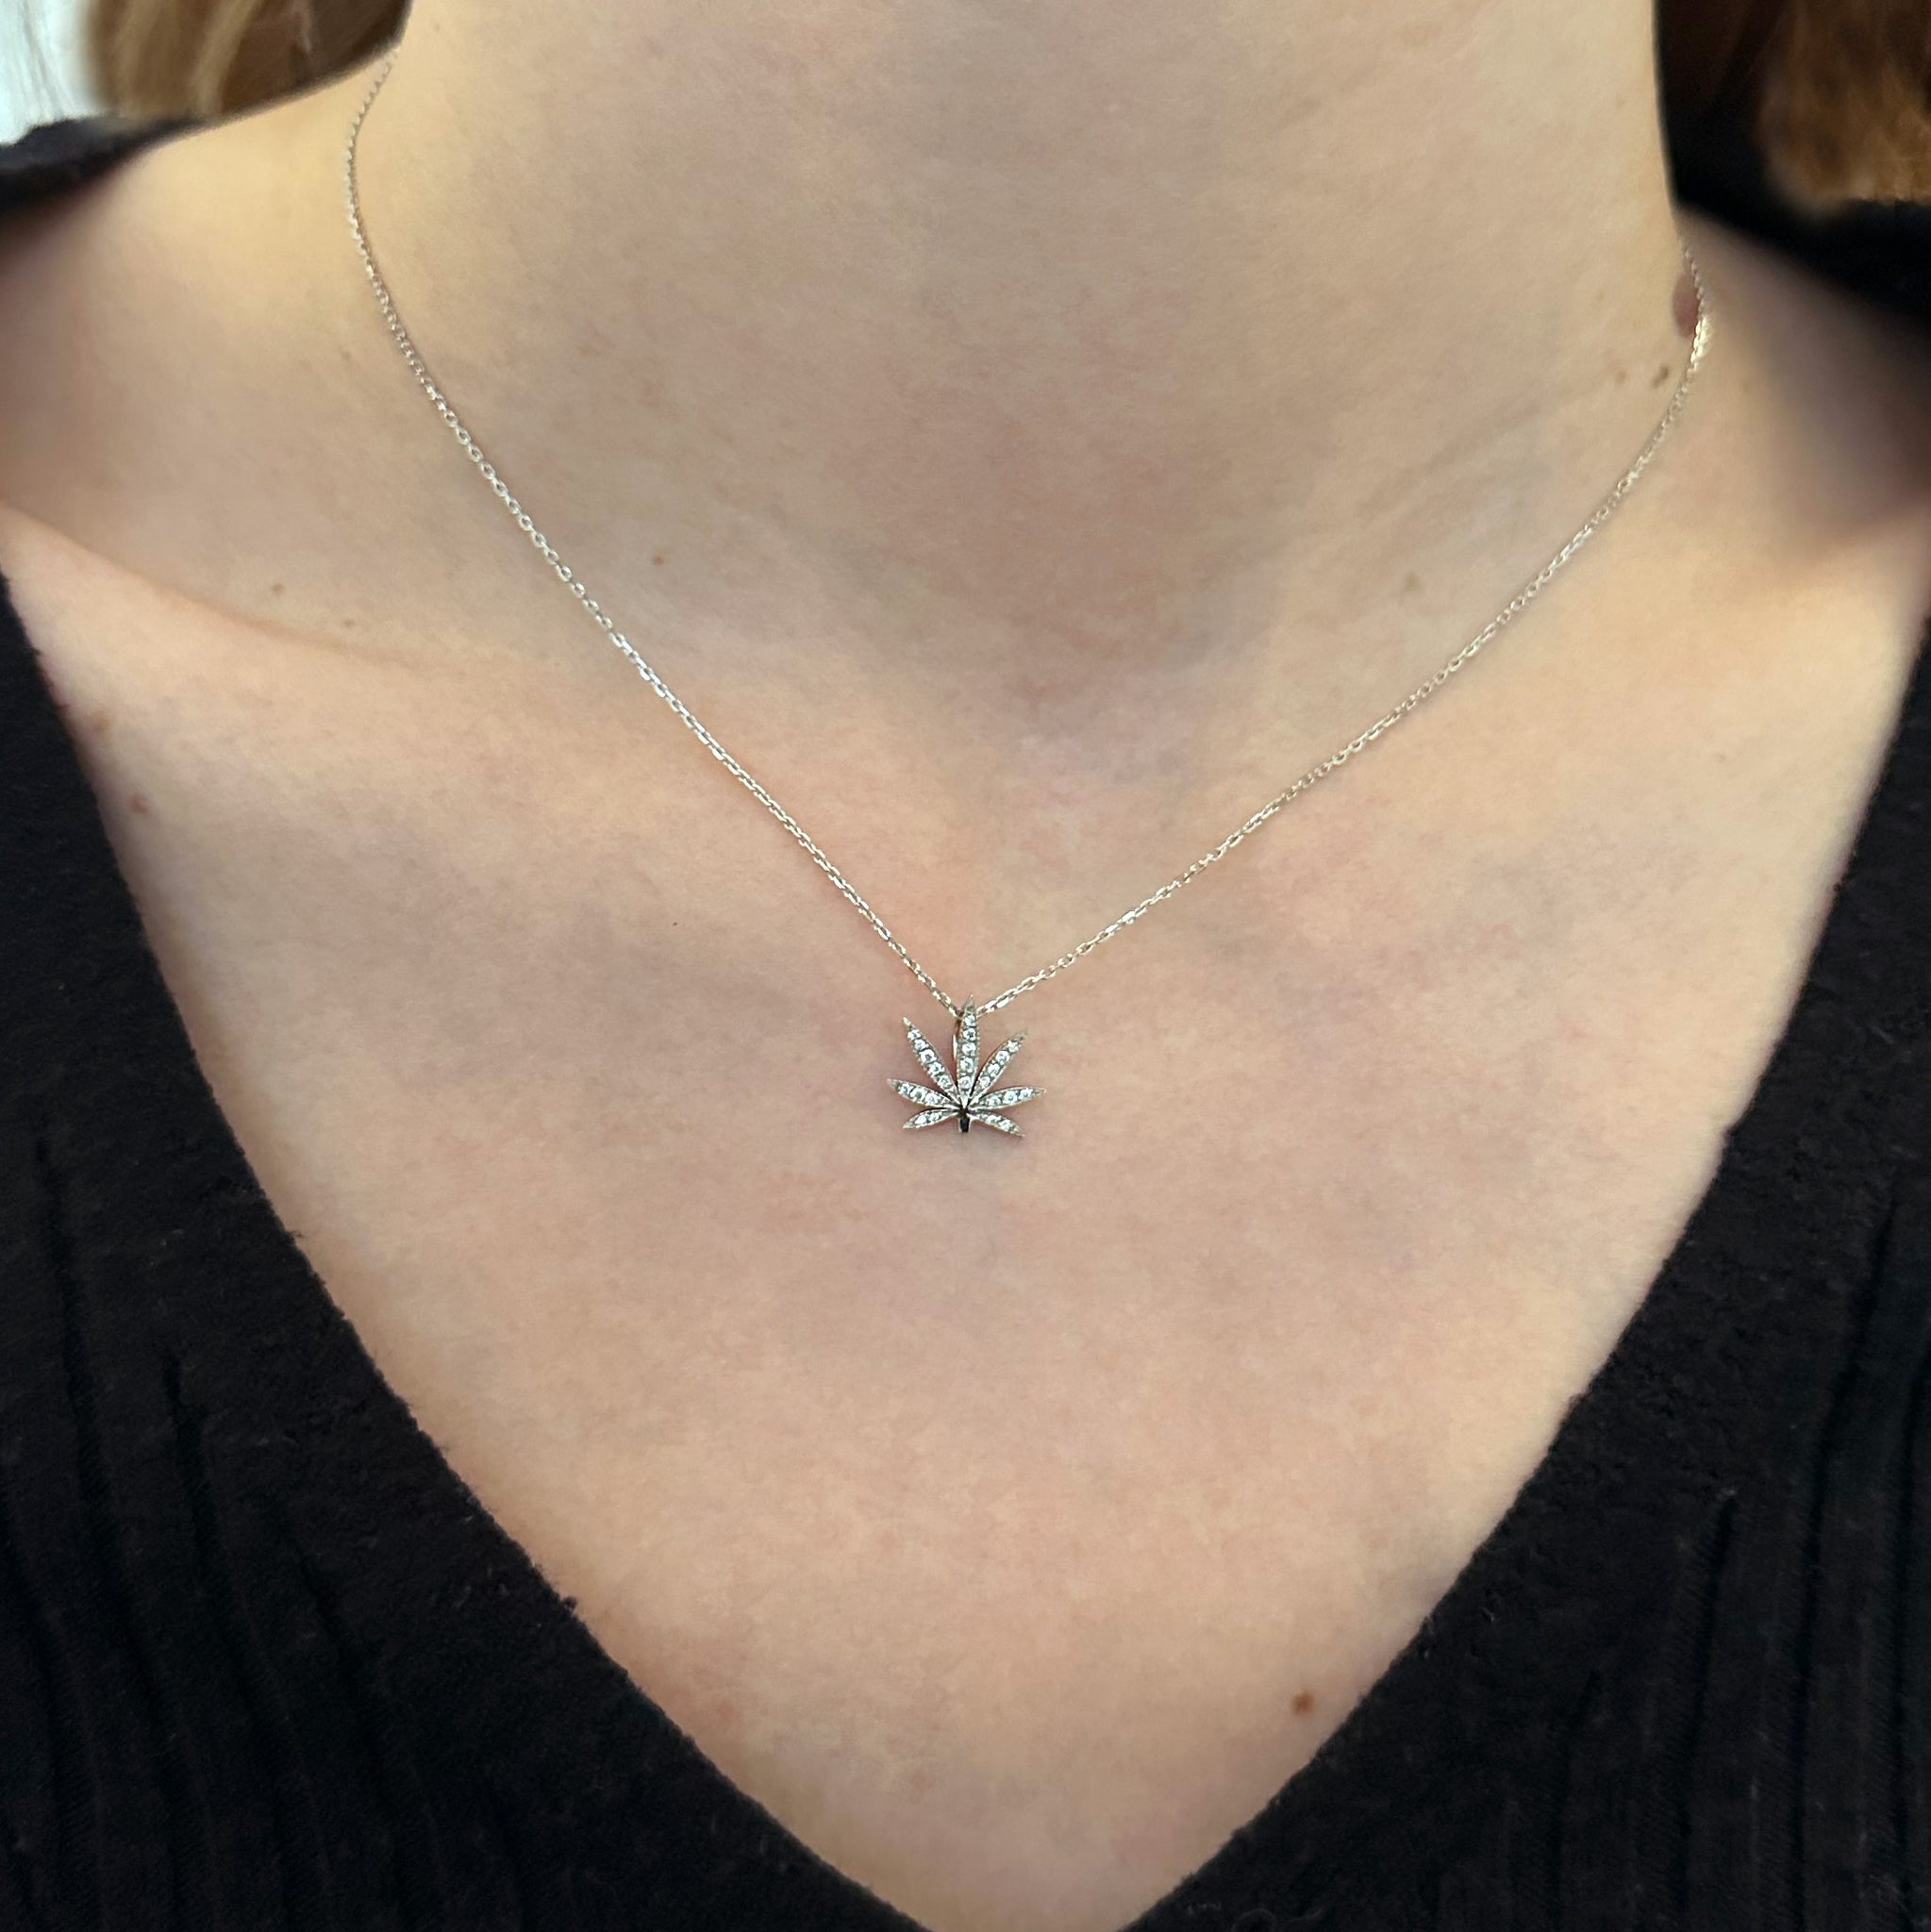 Necklace - Petite feuille des merveilles